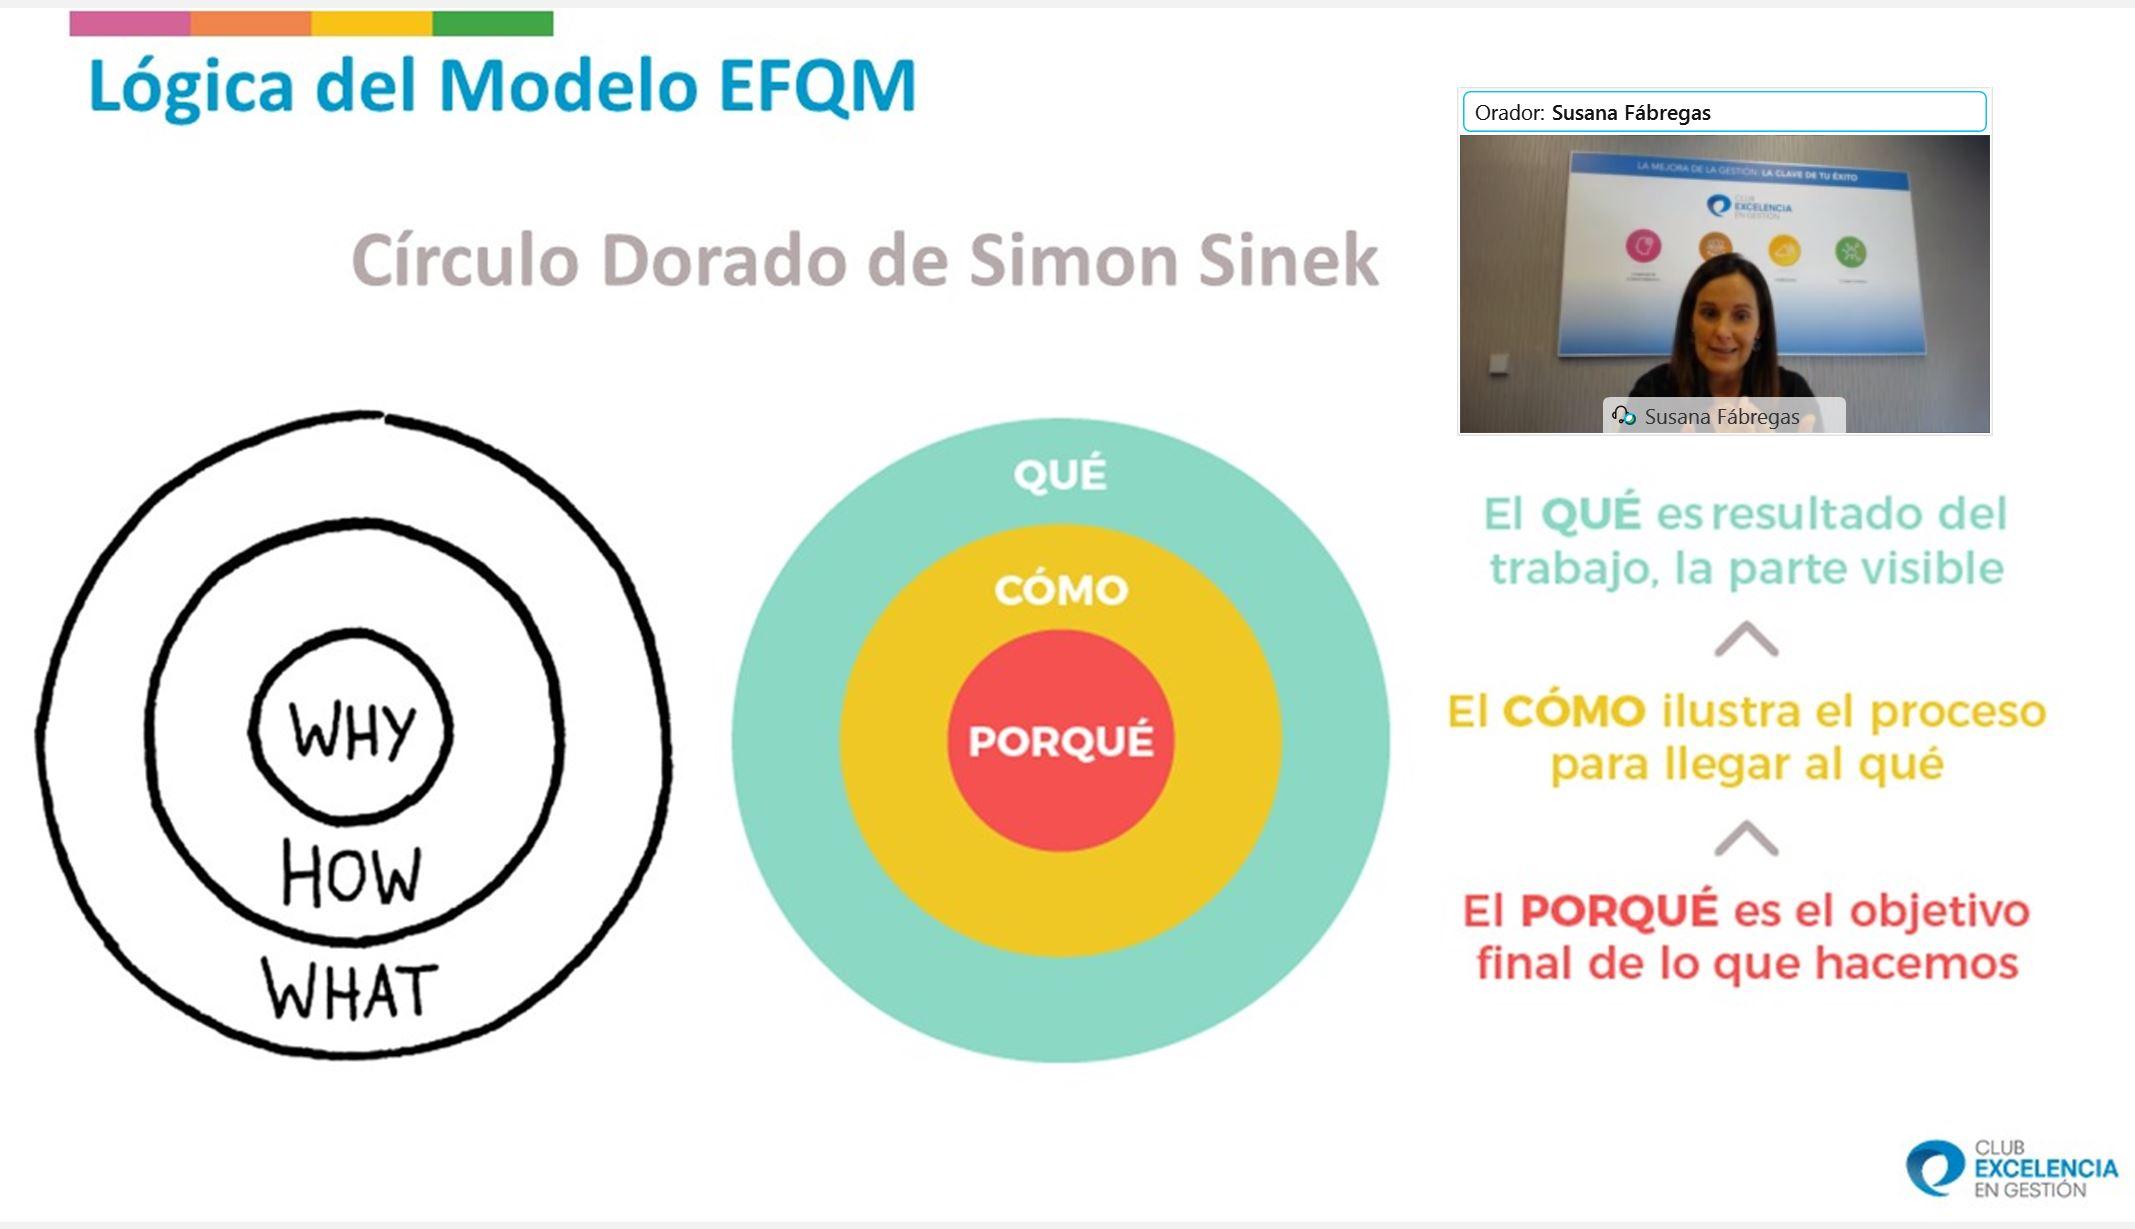 Webinar: El Modelo EFQM y la Plataforma de Evaluación EFQM Digital